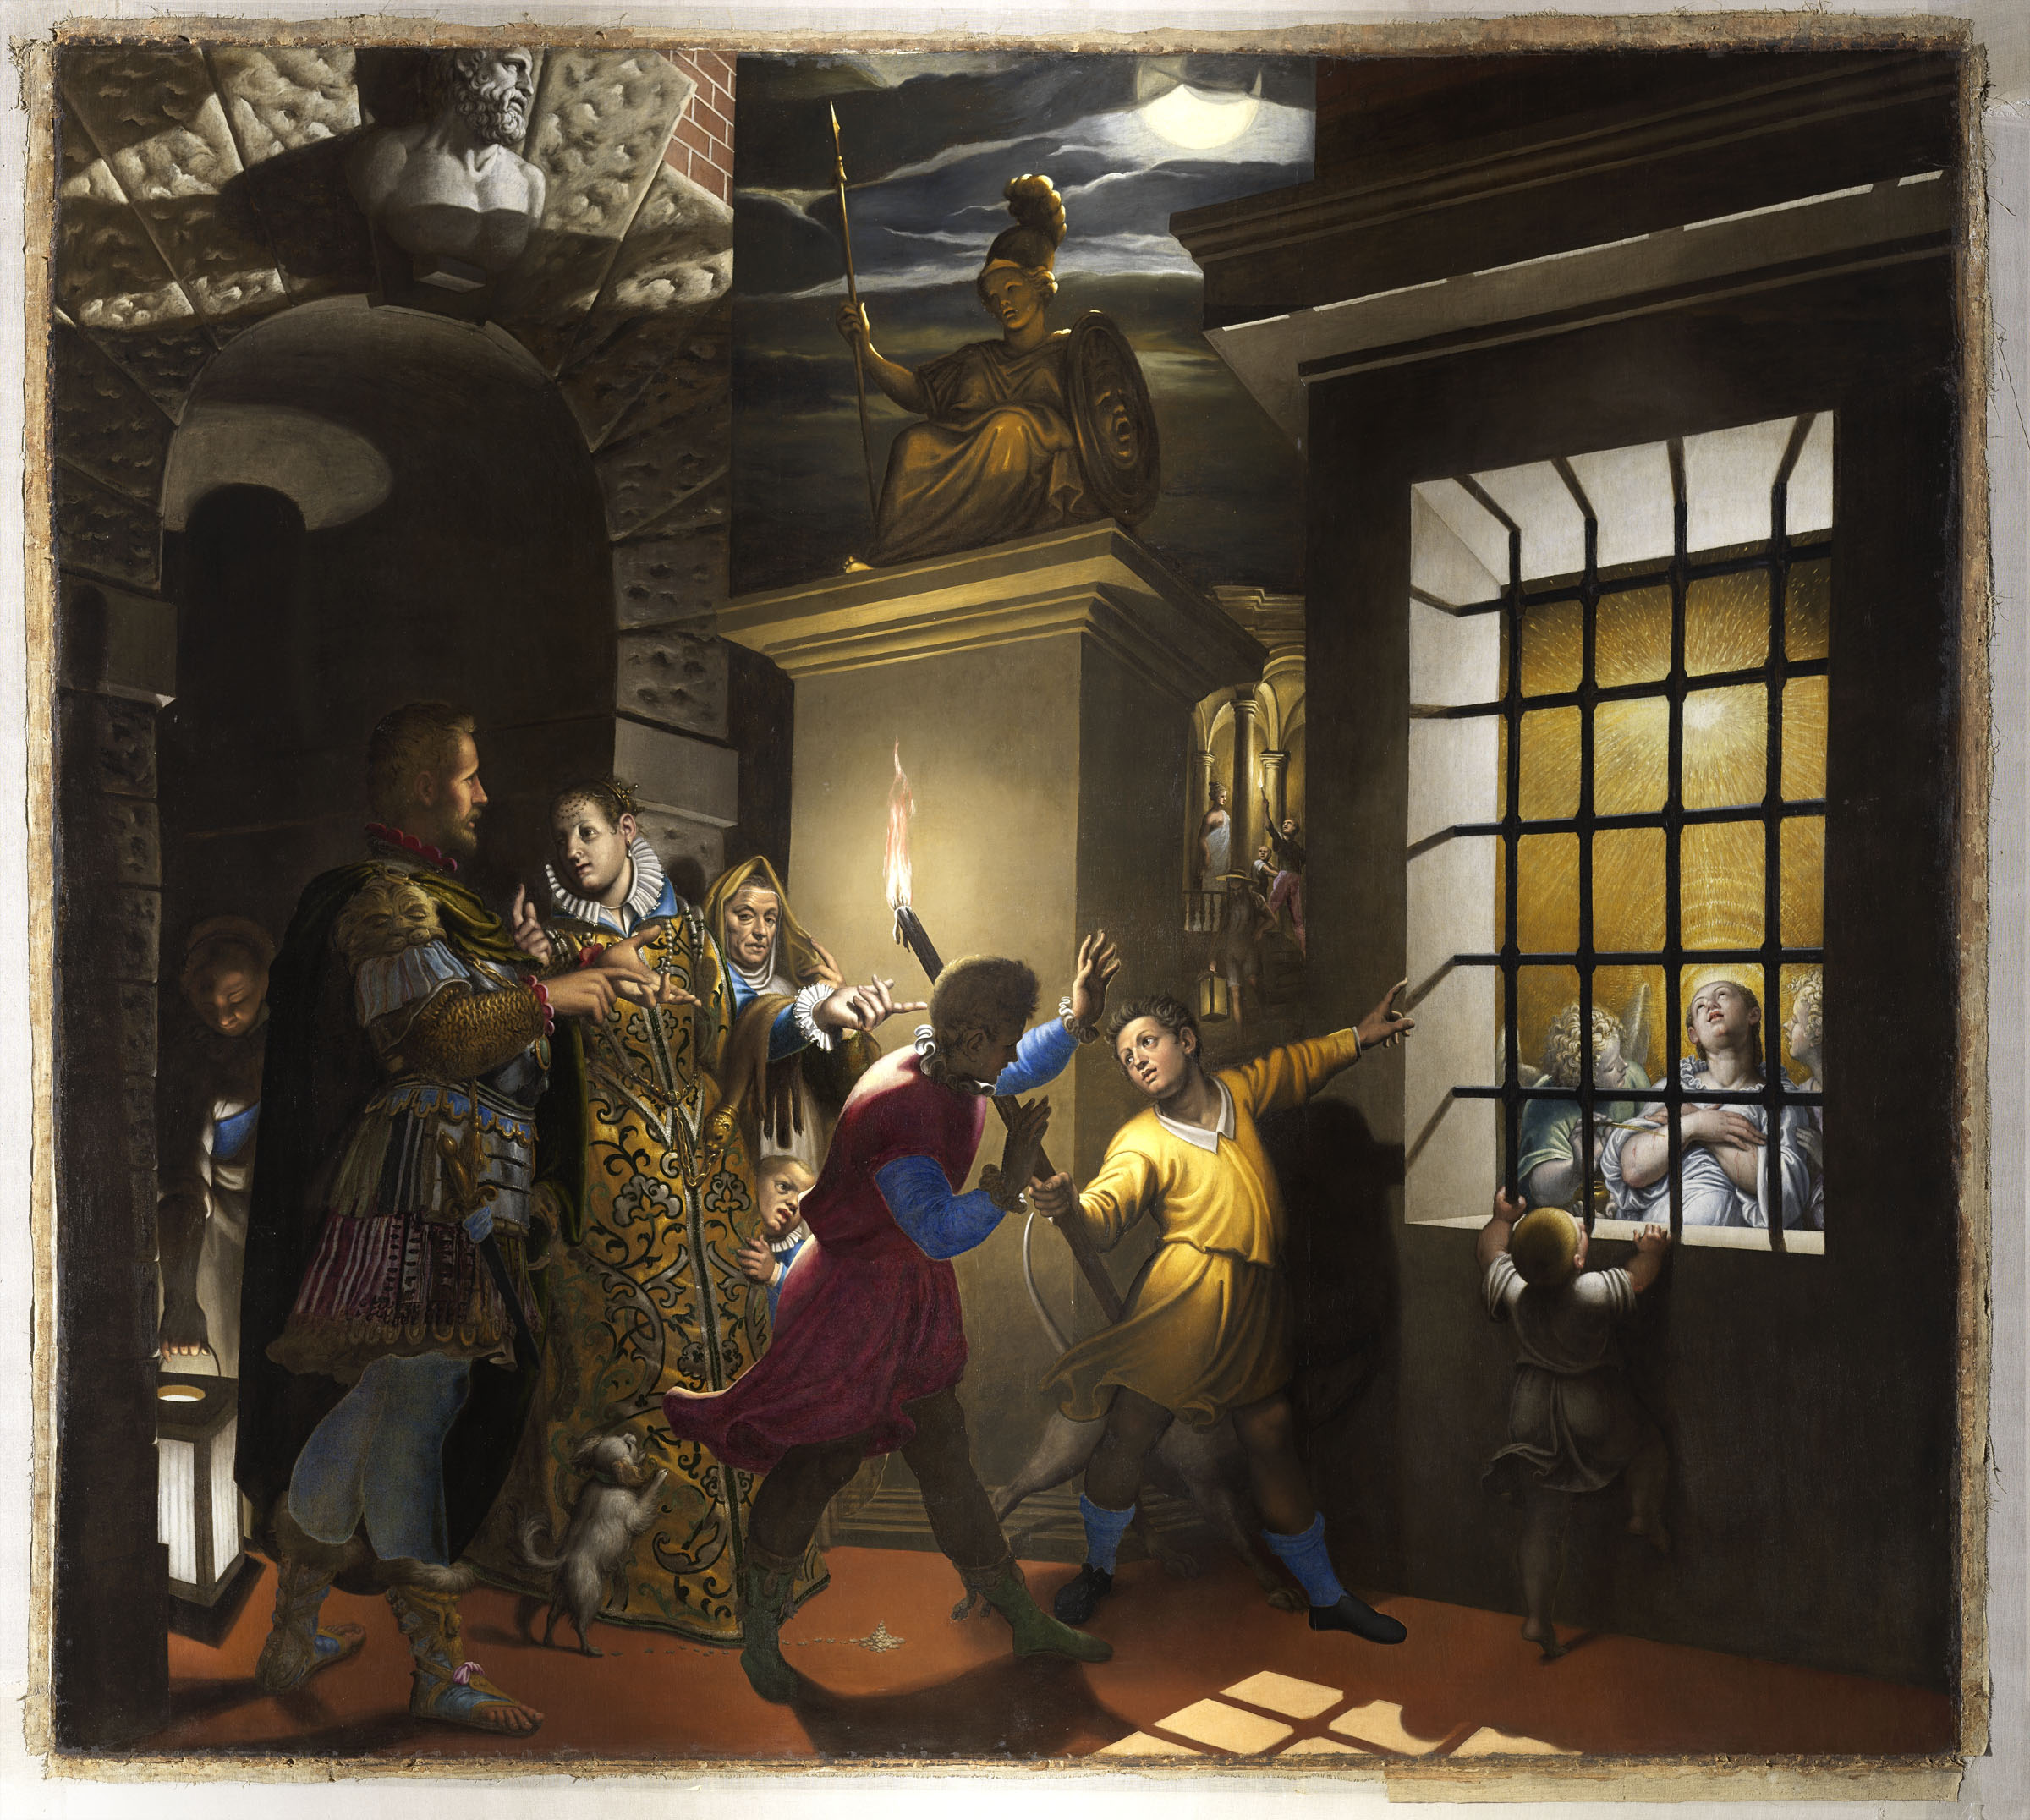 Antonio Campi, Santa Caterina visitata in carcere dall’imperatrice Faustina (1584; olio su tela, 400 x 500 cm; Milano, chiesa di santa Maria degli Angeli)
